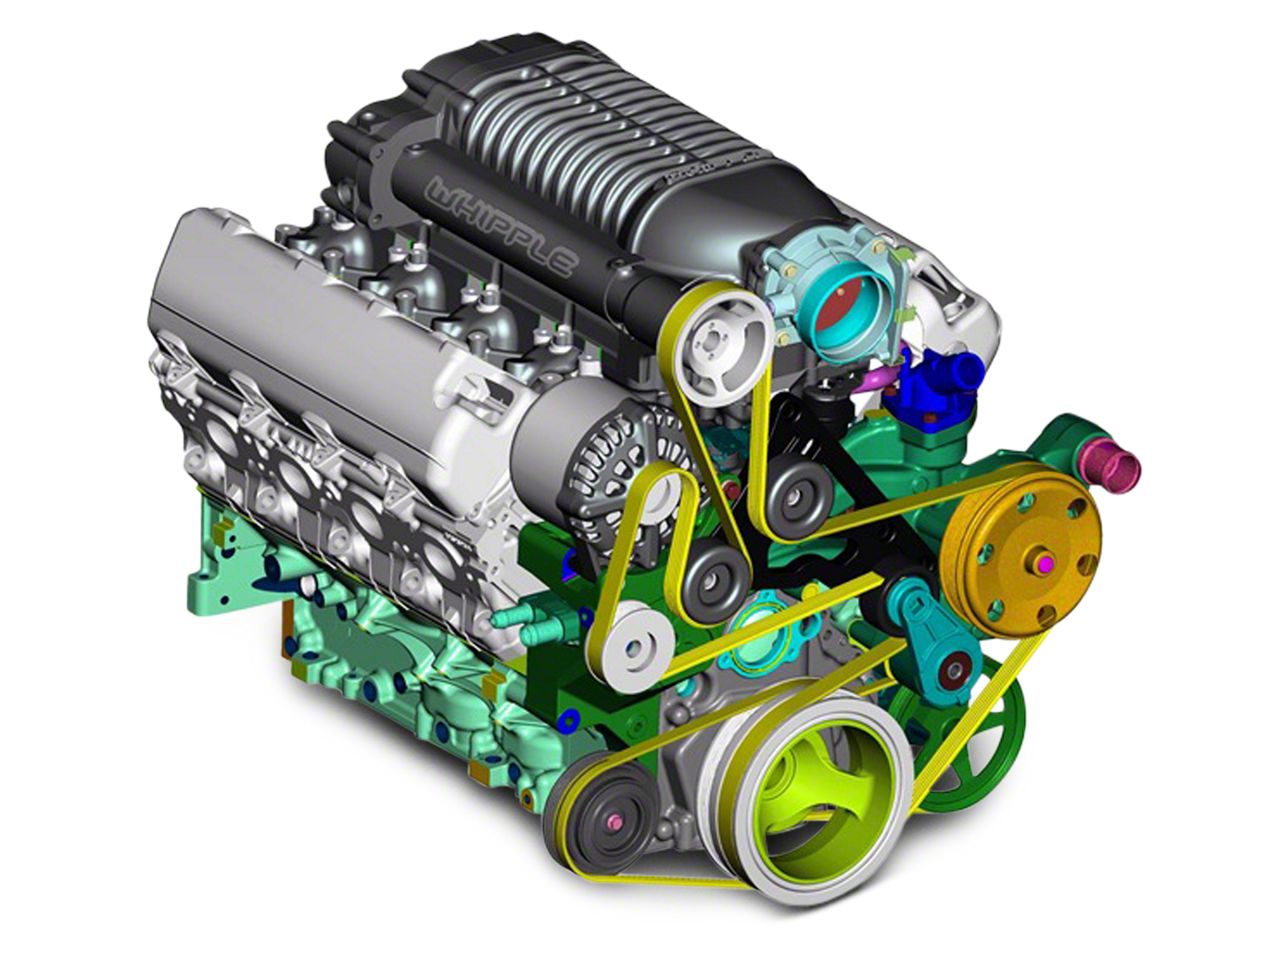 Sierra Engine